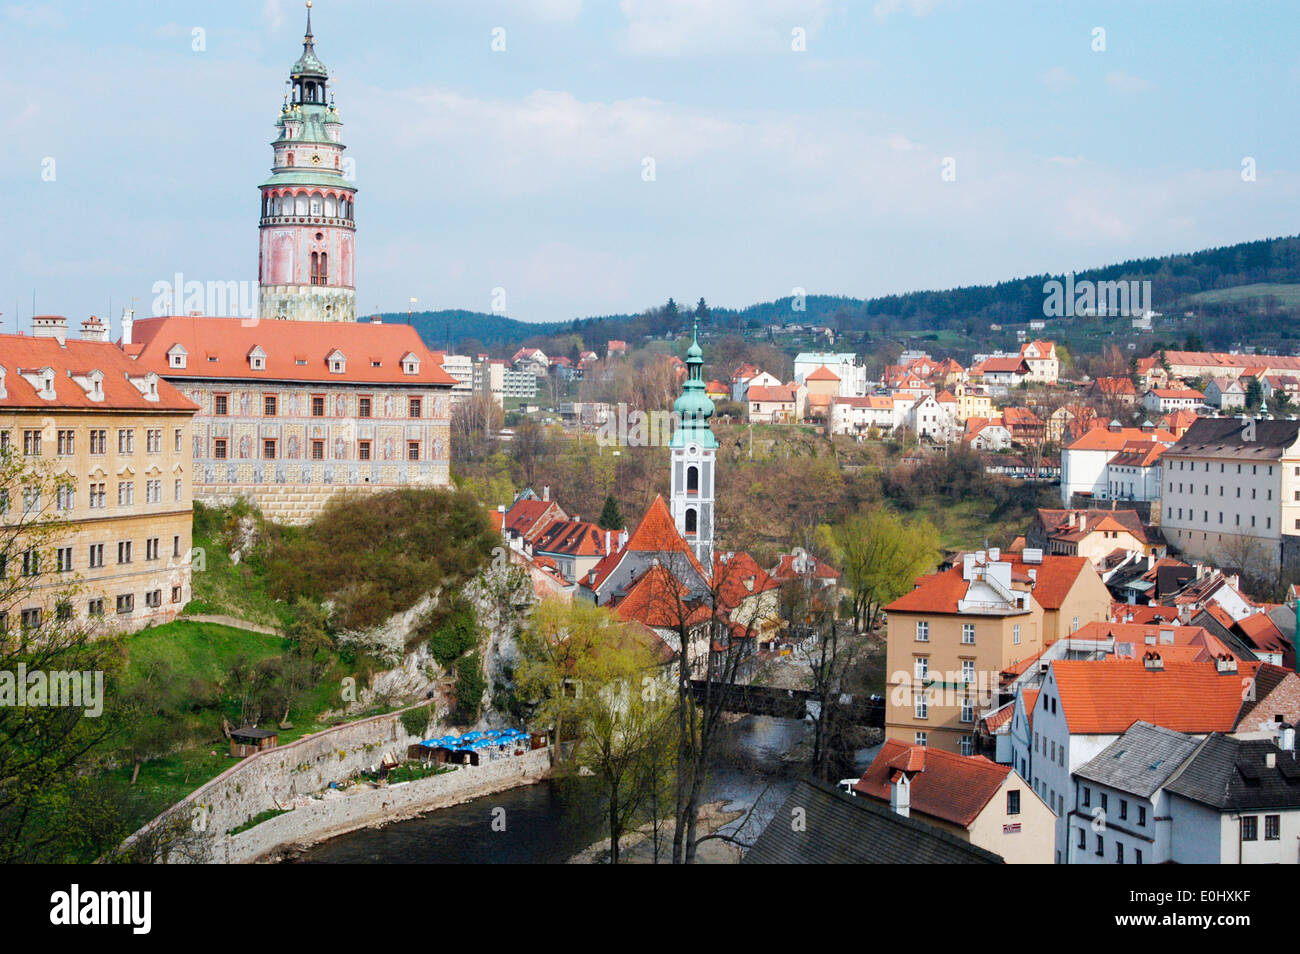 Tschechien, Cesky Krumlov, UNESCO Welterbe, Häuser, Aussichtspunkt, Böhmisch Krumau, Krumau an der Moldau, Krummau Stock Photo